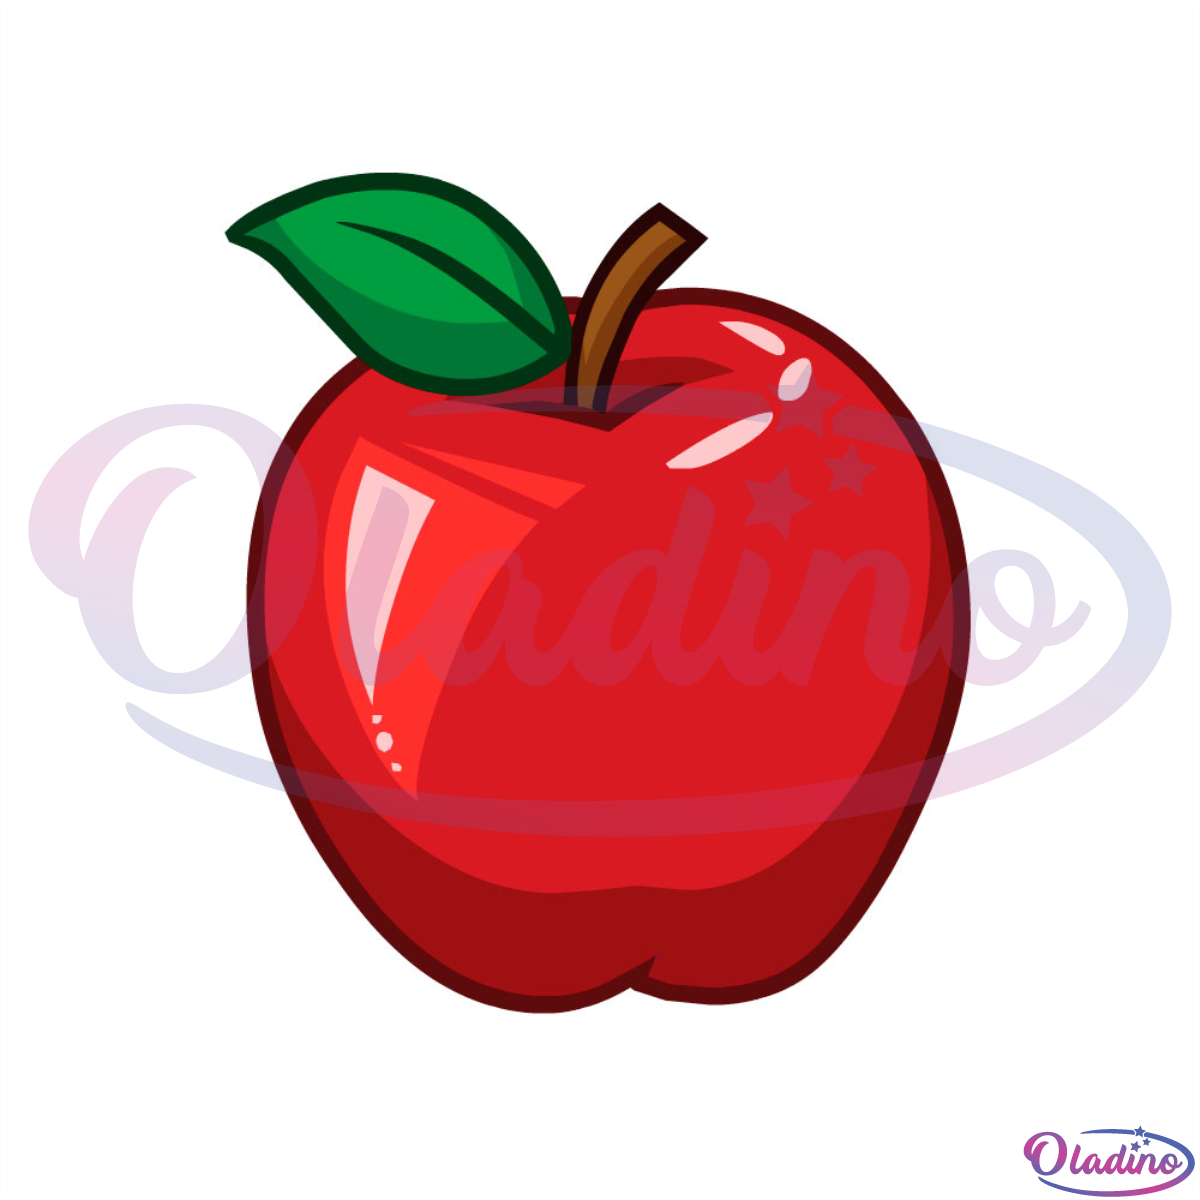 Big Red Apple Back To School SVG Digital File